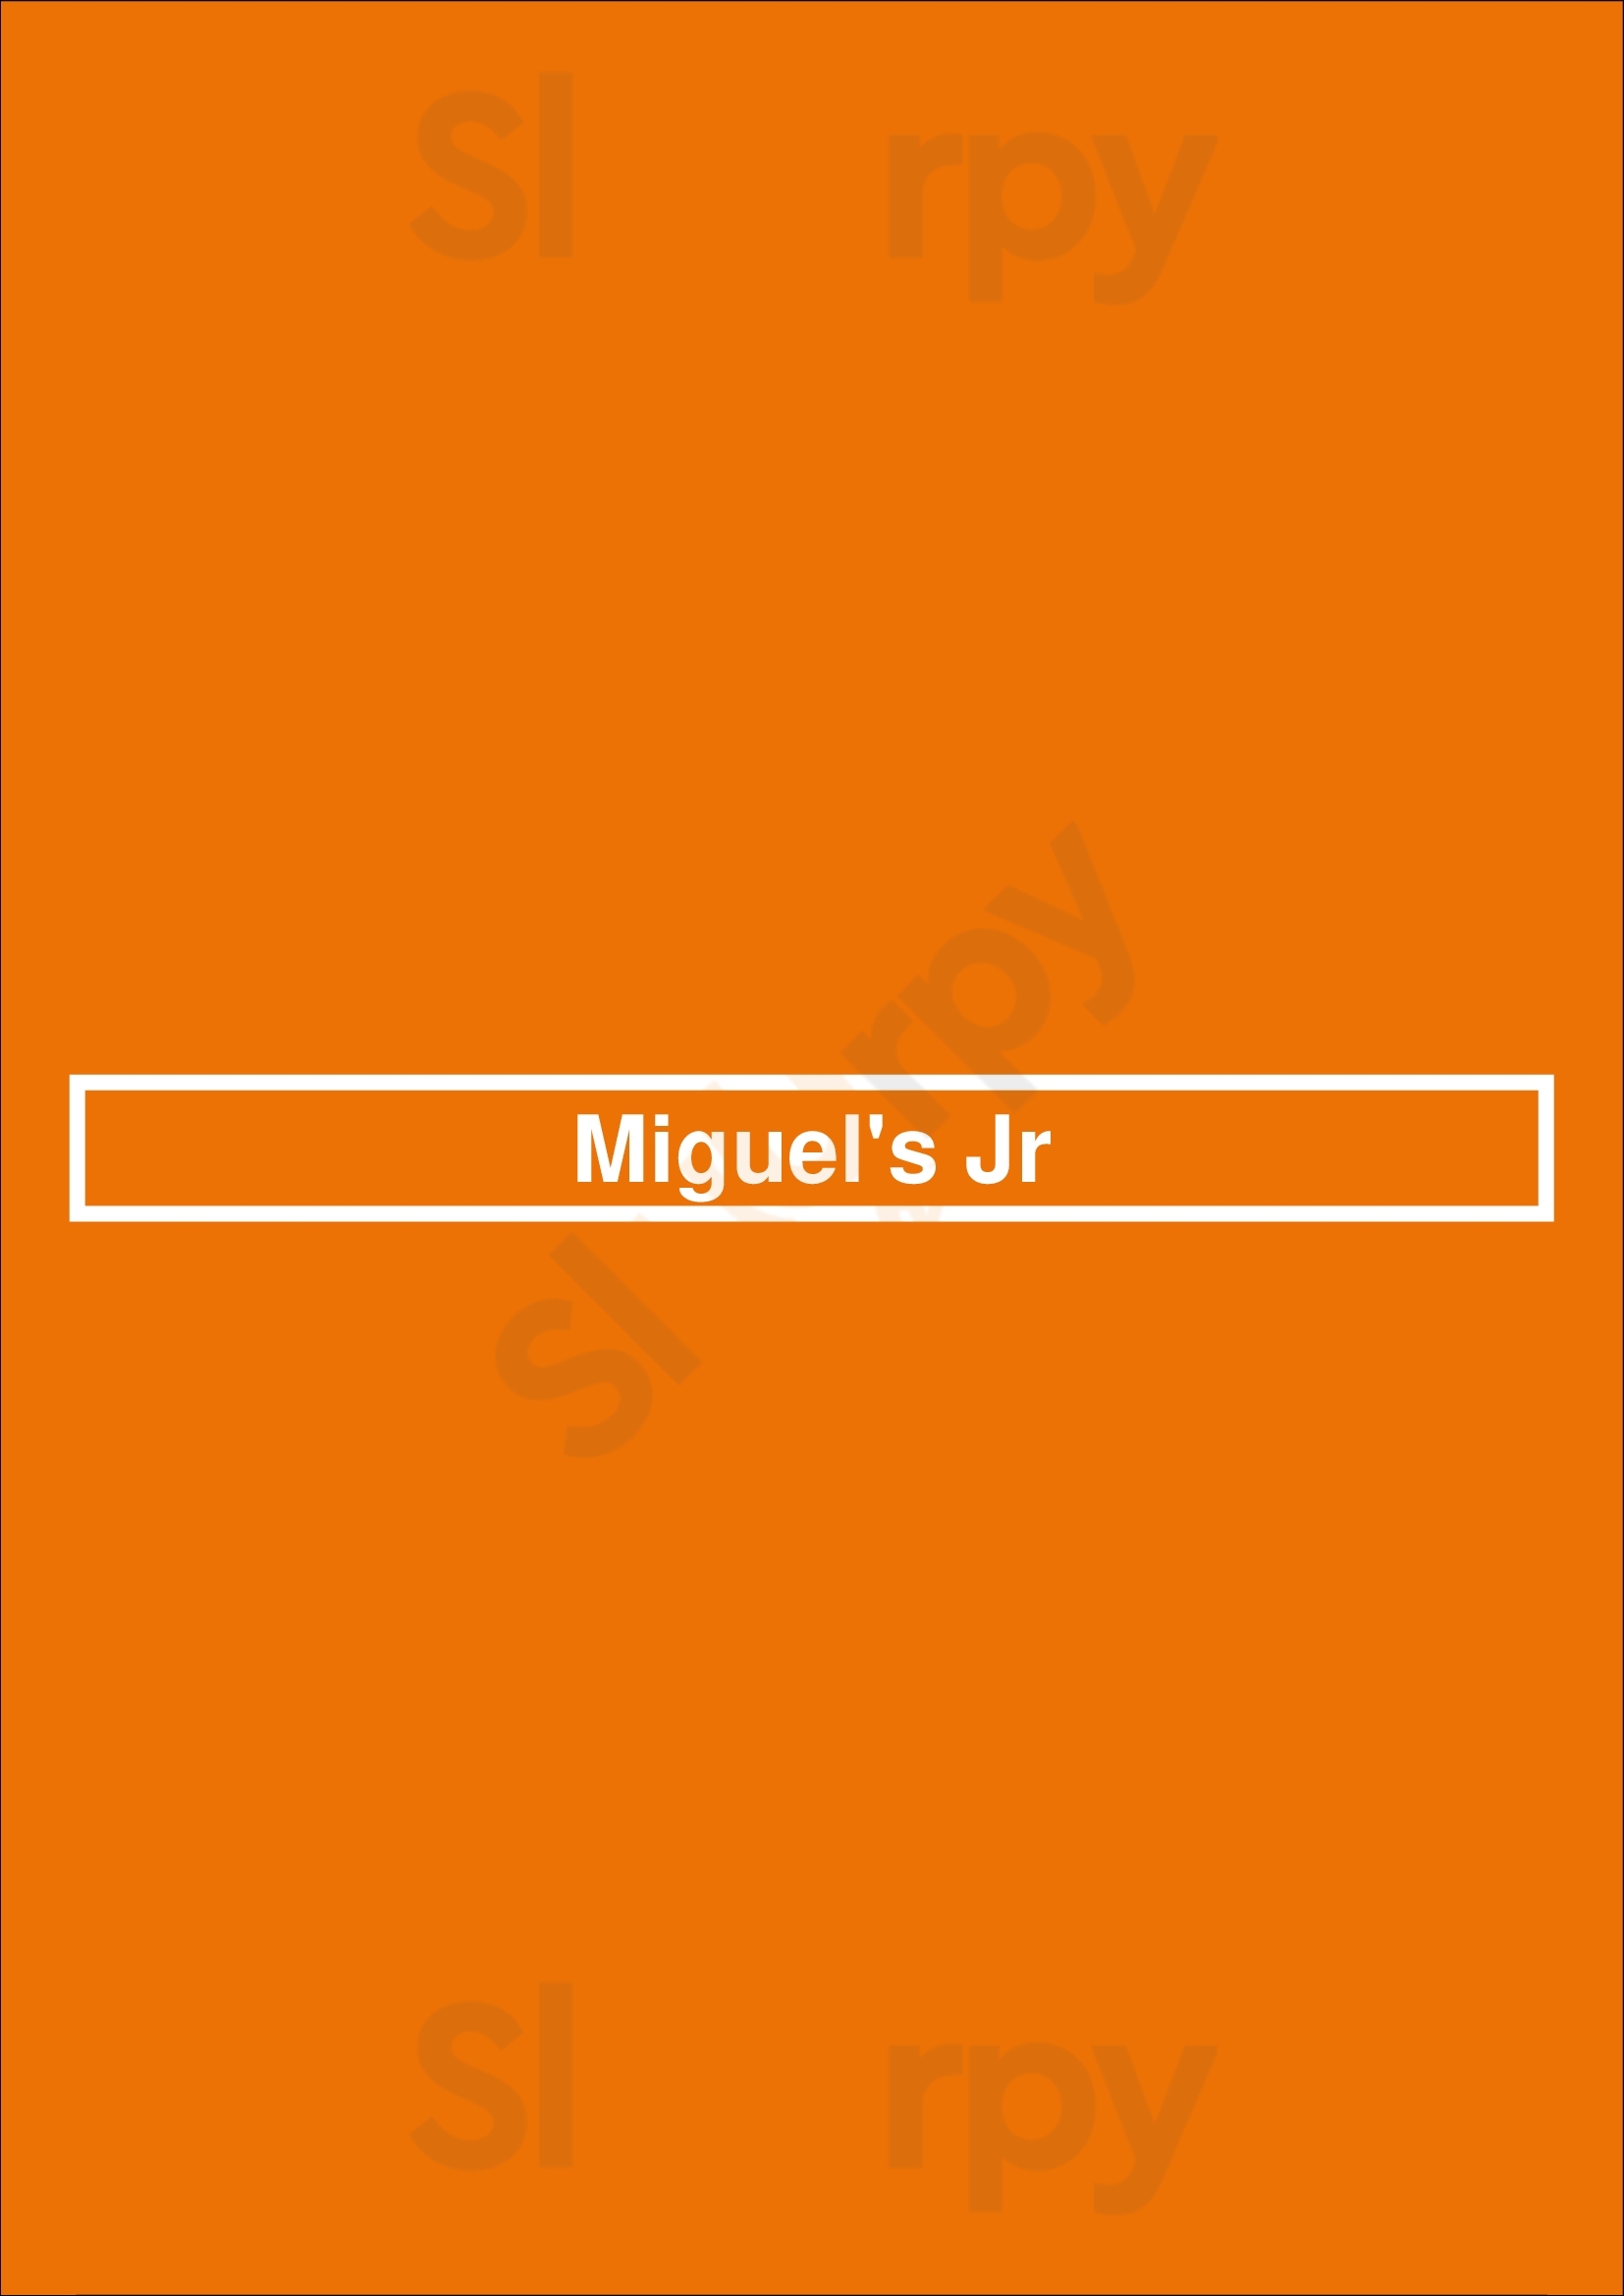 Miguel's Jr Huntington Beach Menu - 1